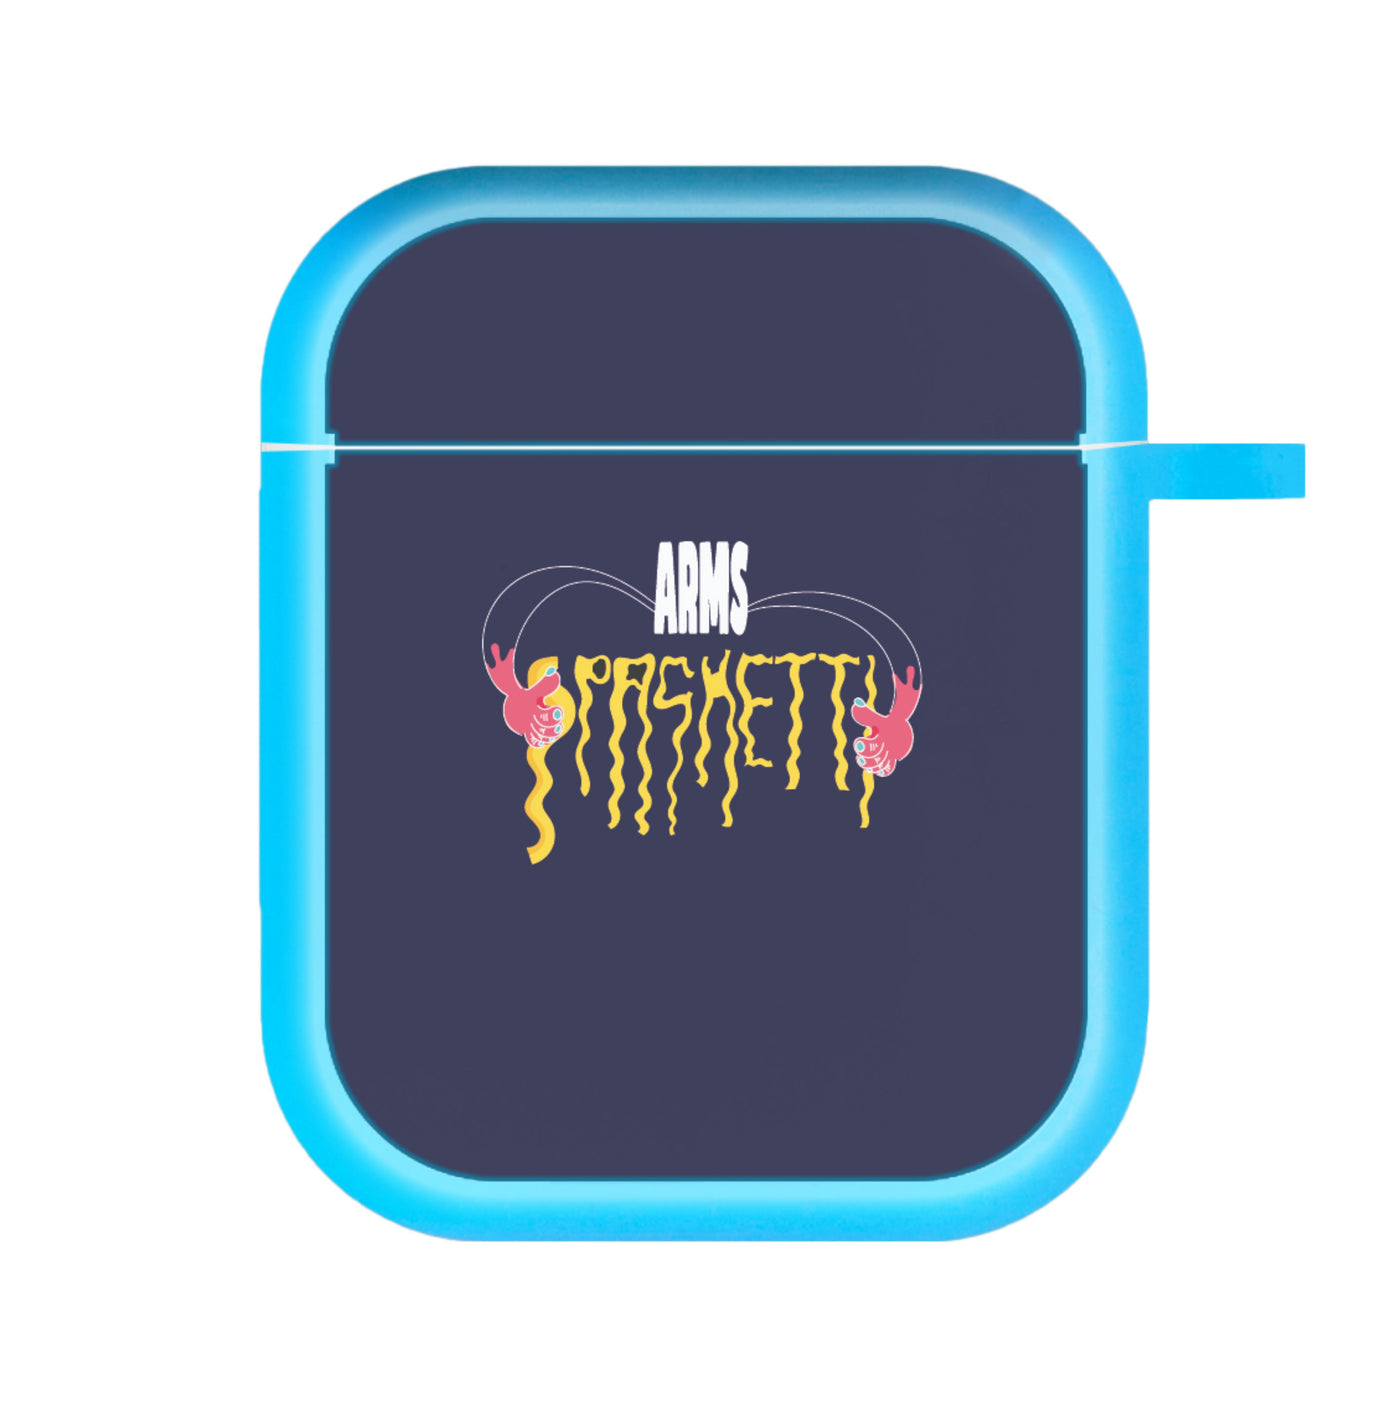 Arms Spaghetti - Dark Blue AirPods Case